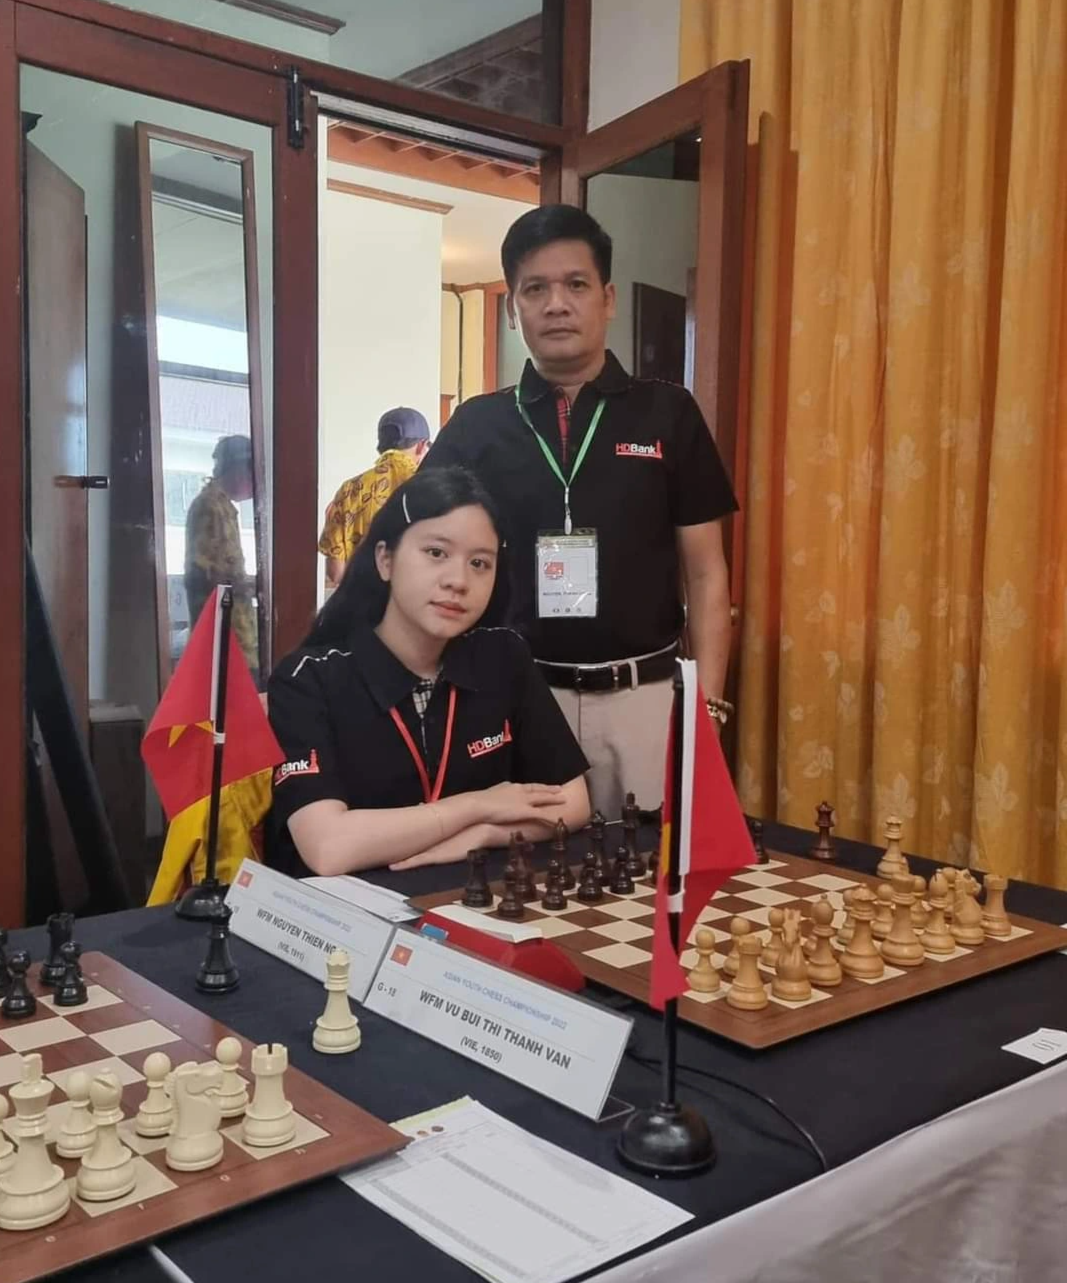 Chân dung nữ kiện tướng 17 tuổi vừa giành HCV cờ vua trẻ châu Á - Ảnh 4.